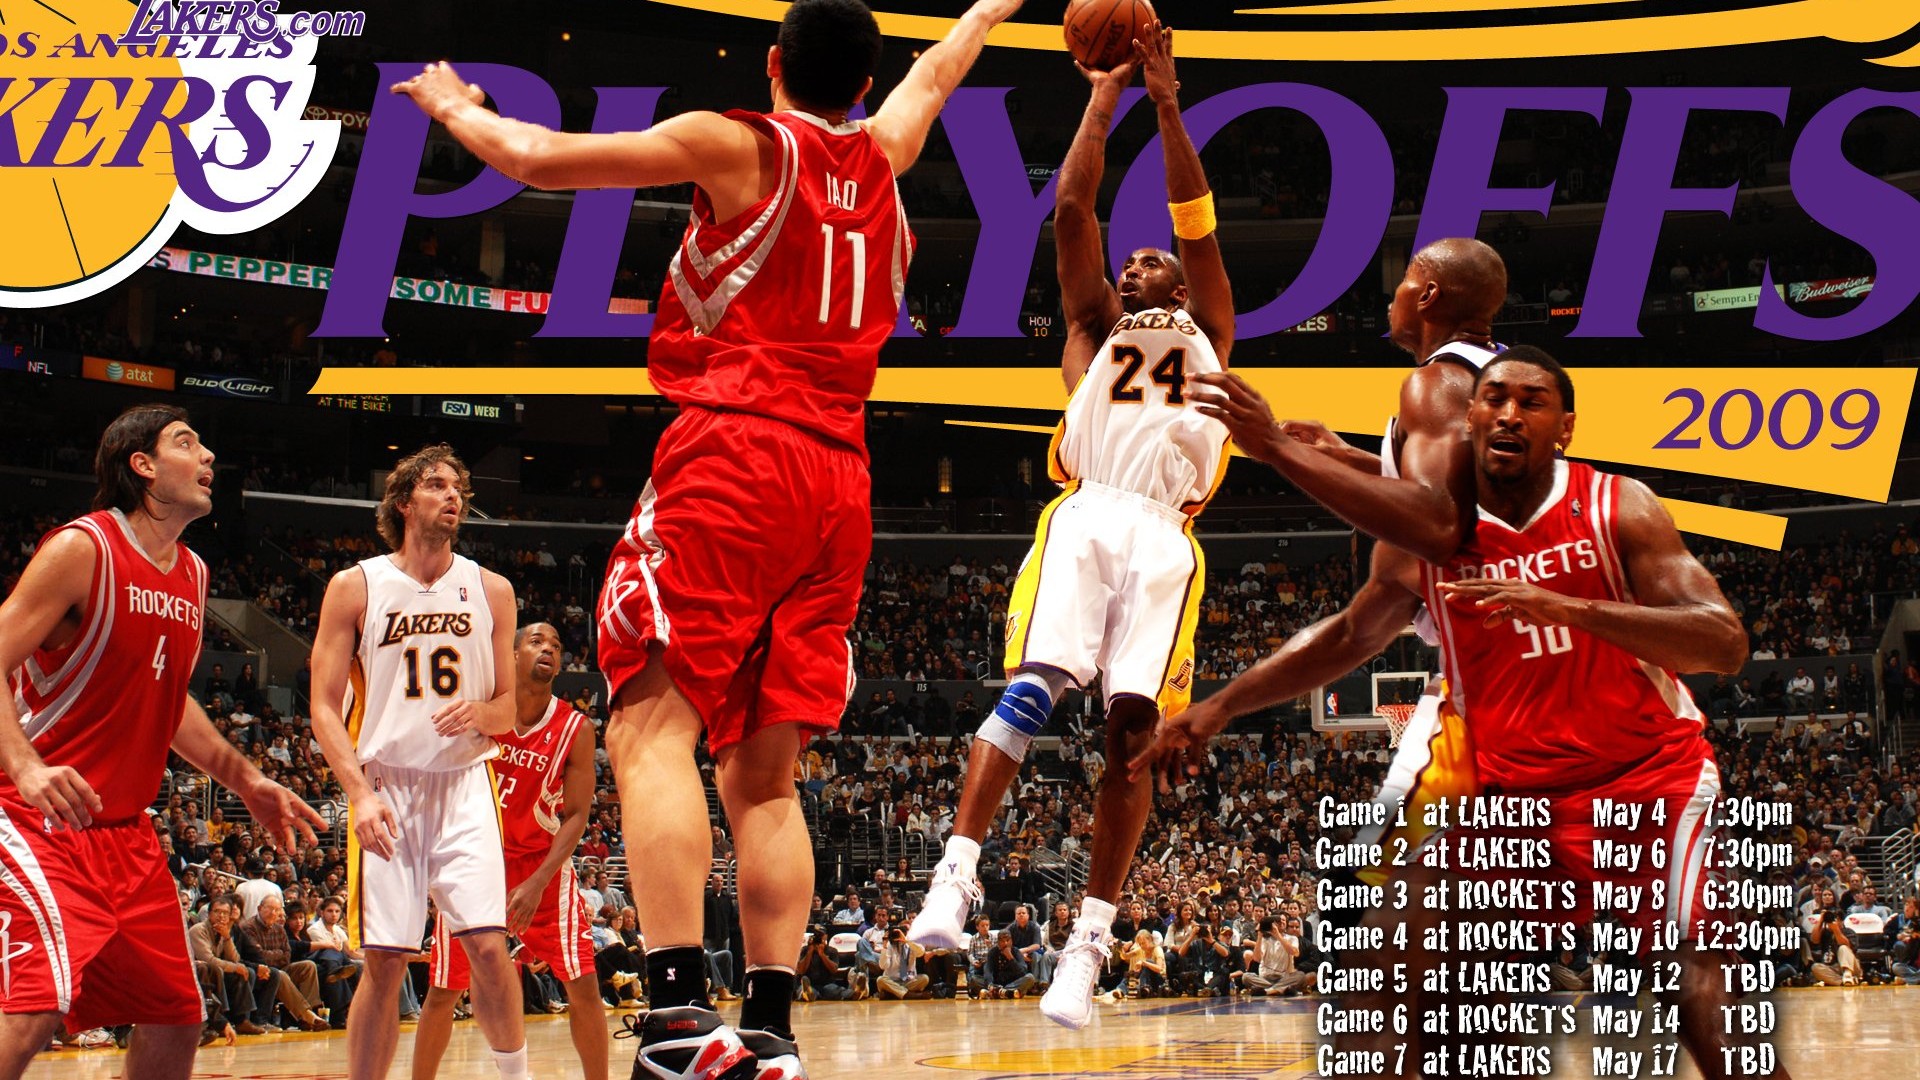 NBA2009 Champion Lakers Wallpaper #9 - 1920x1080